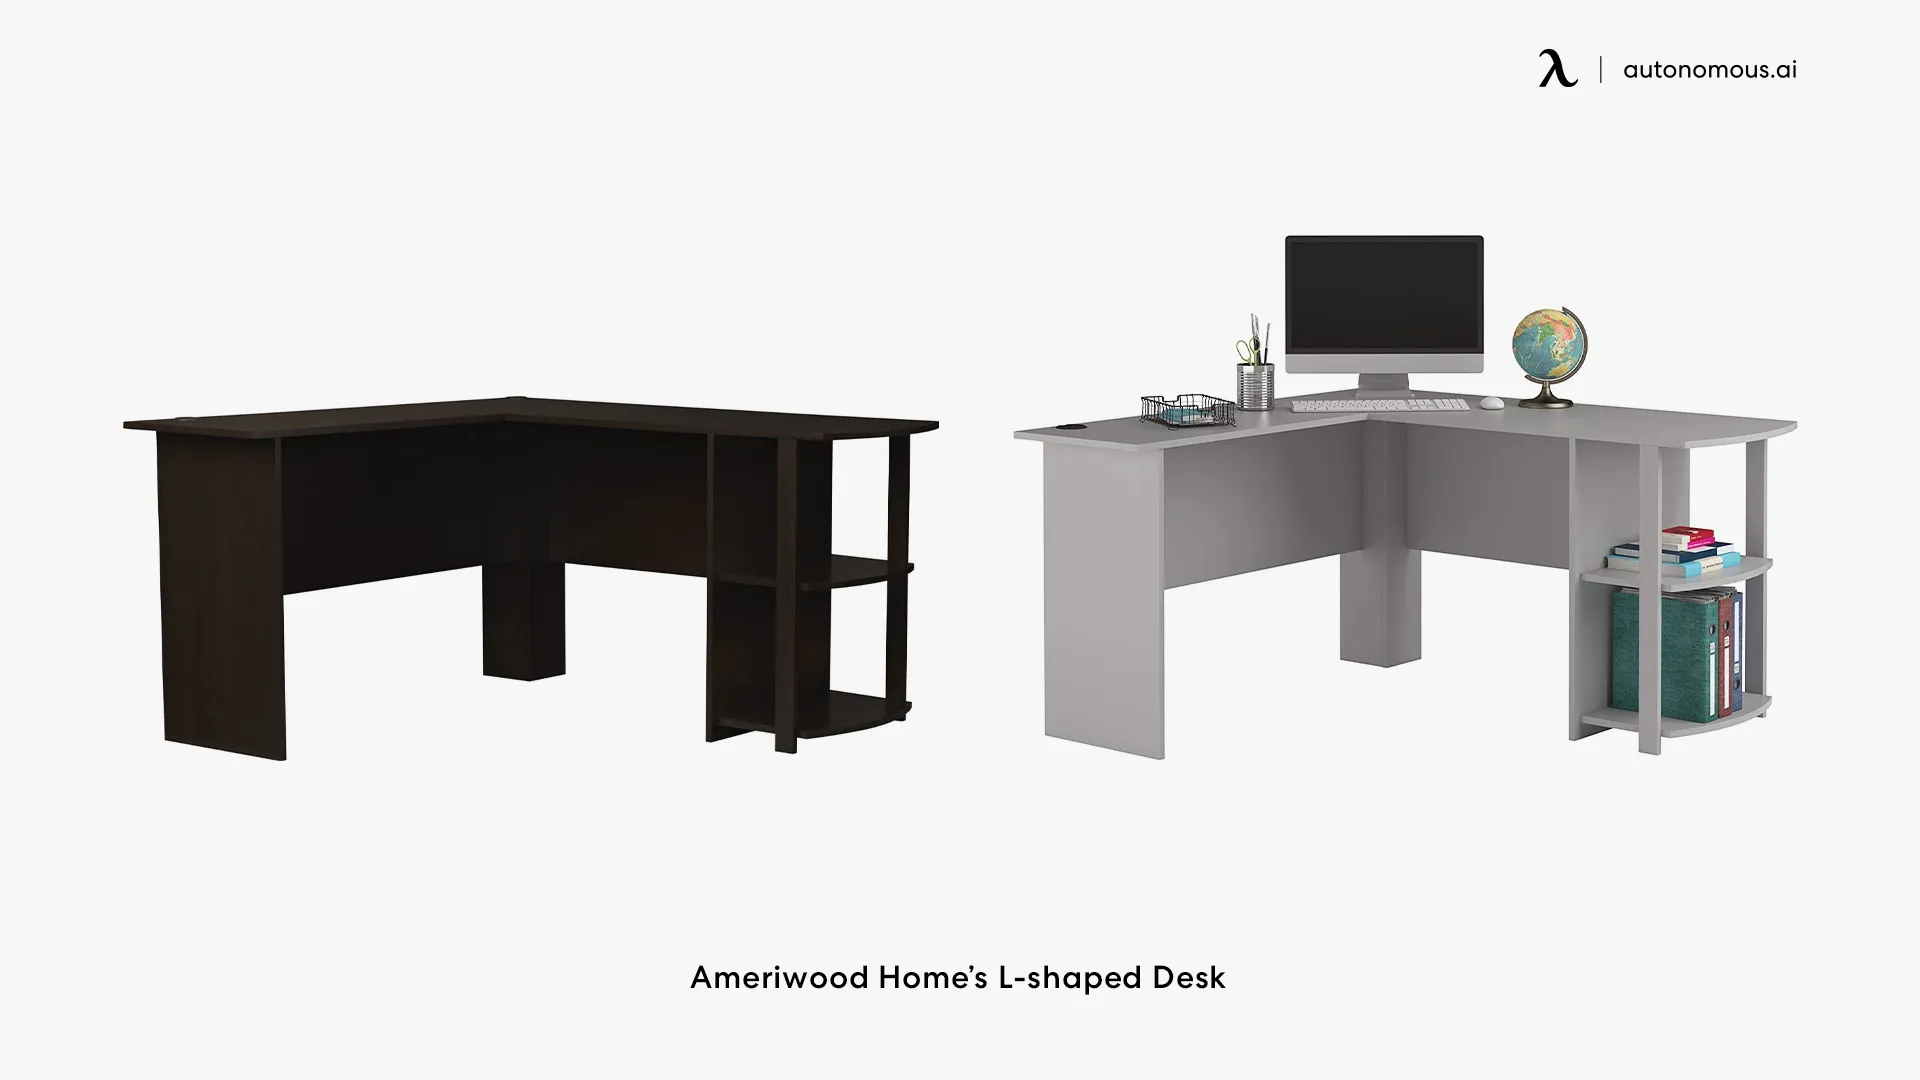 Ameriwood Home’s L-shaped Desk